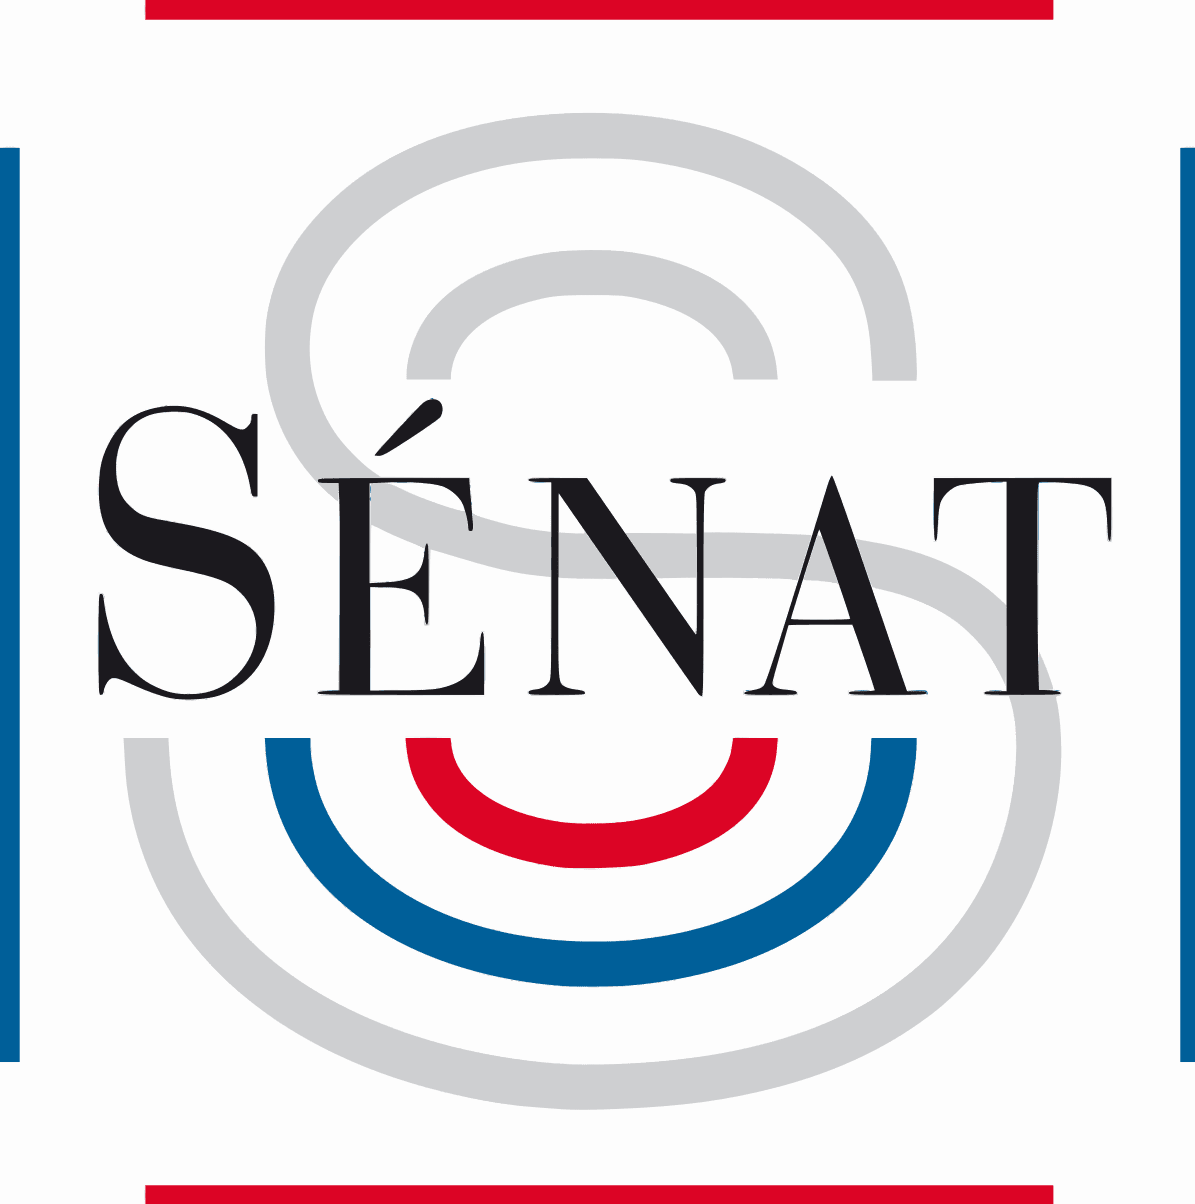 Sénat logo Aide aux victimes et familles des accidentés de la route